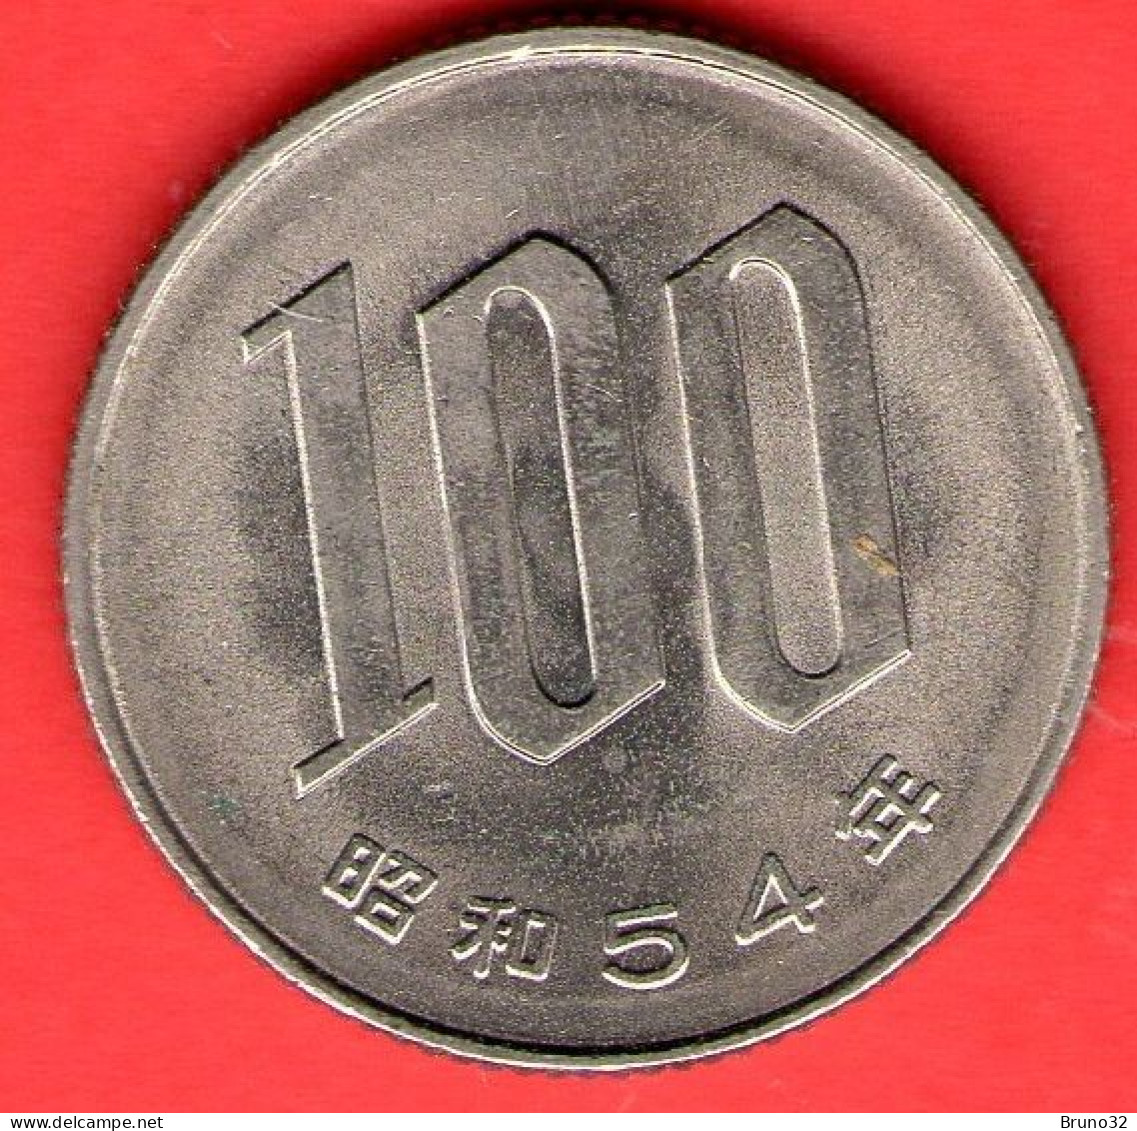 Giappone - Japan - Japon - 100 Yen (54) - QFDC/aUNC - Come Da Foto - Japan